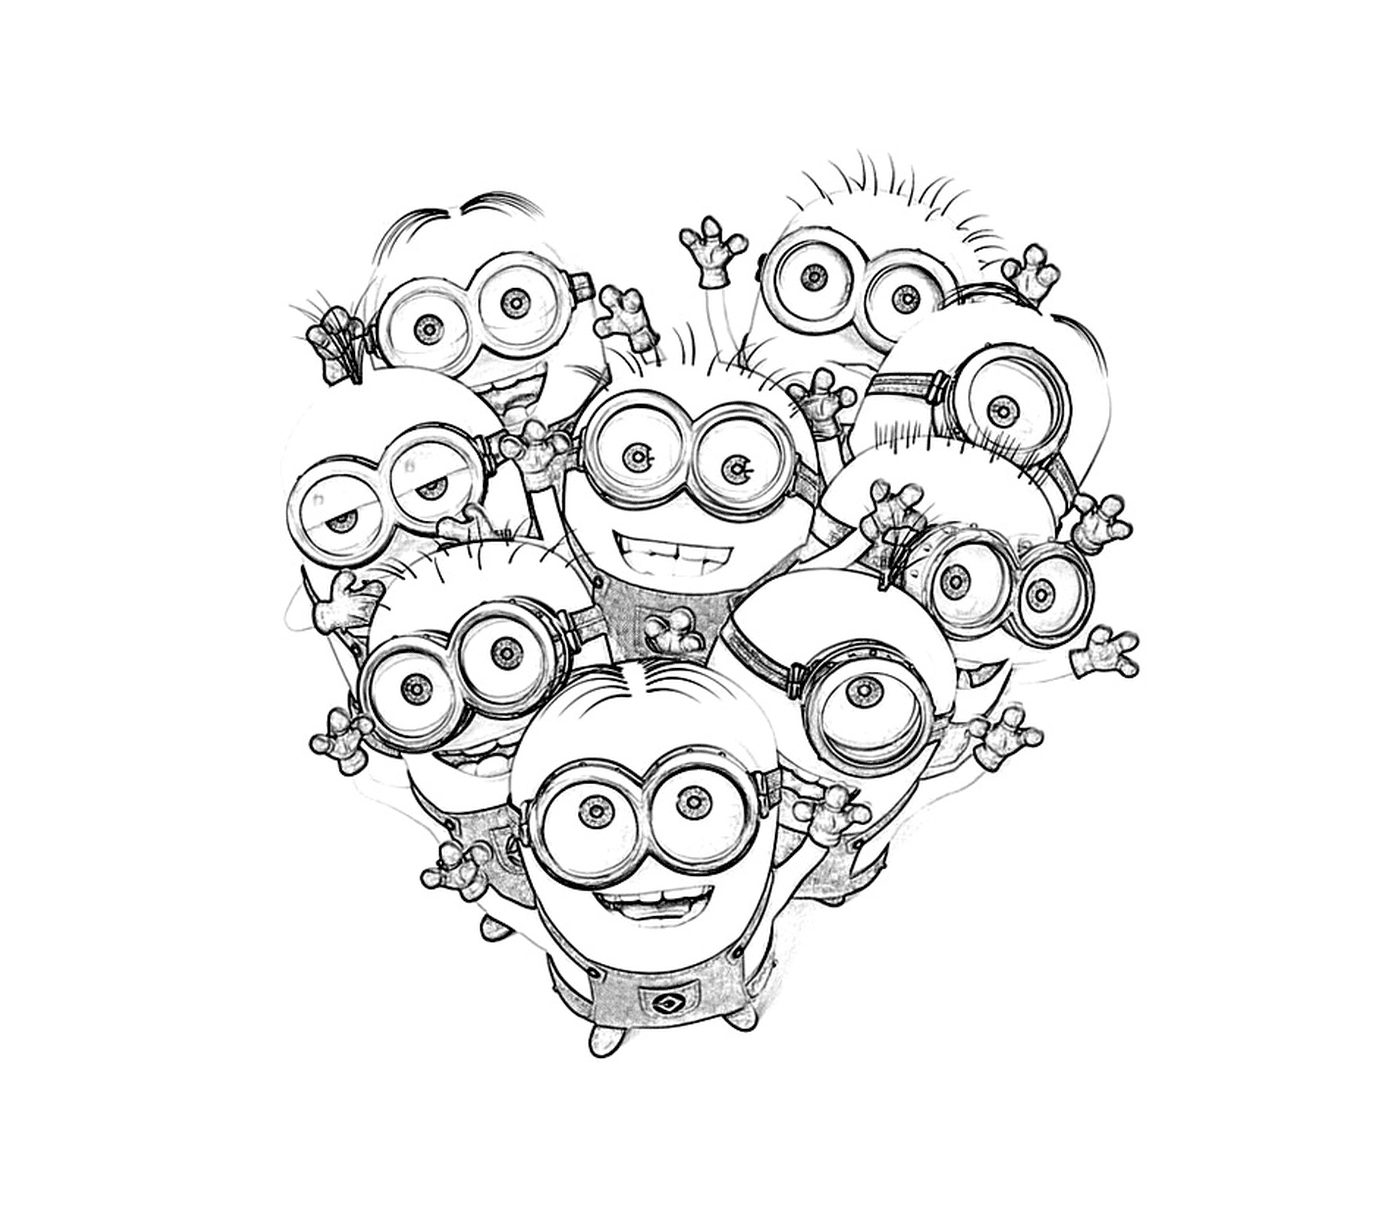   Minions en forme de cœur, groupe amical 